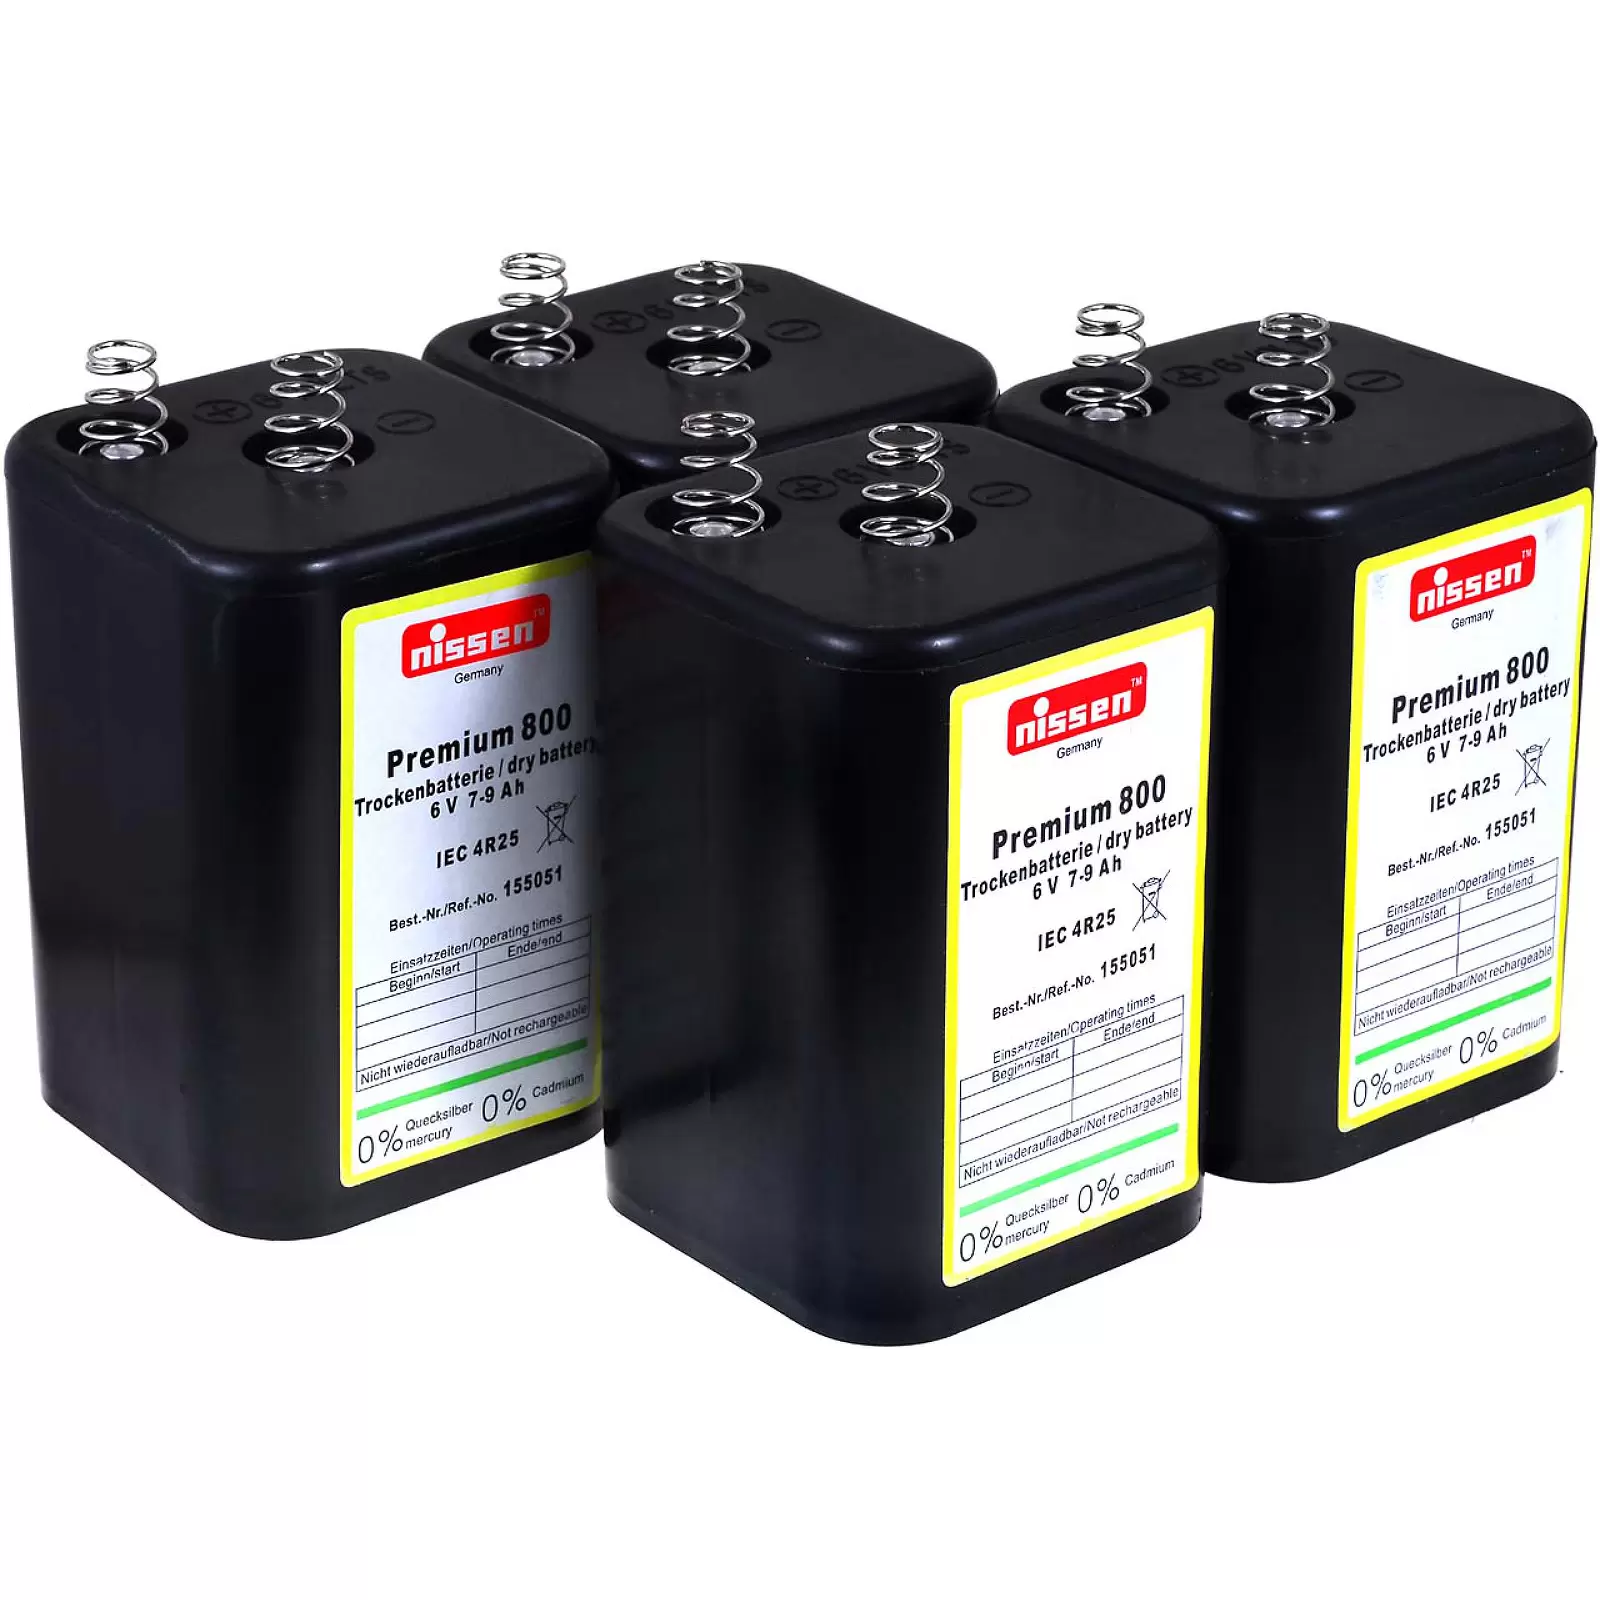 4R25 6V-Blockbatterie Ersatz für Nissen Laternenbatterie IEC 4R25 4er Set